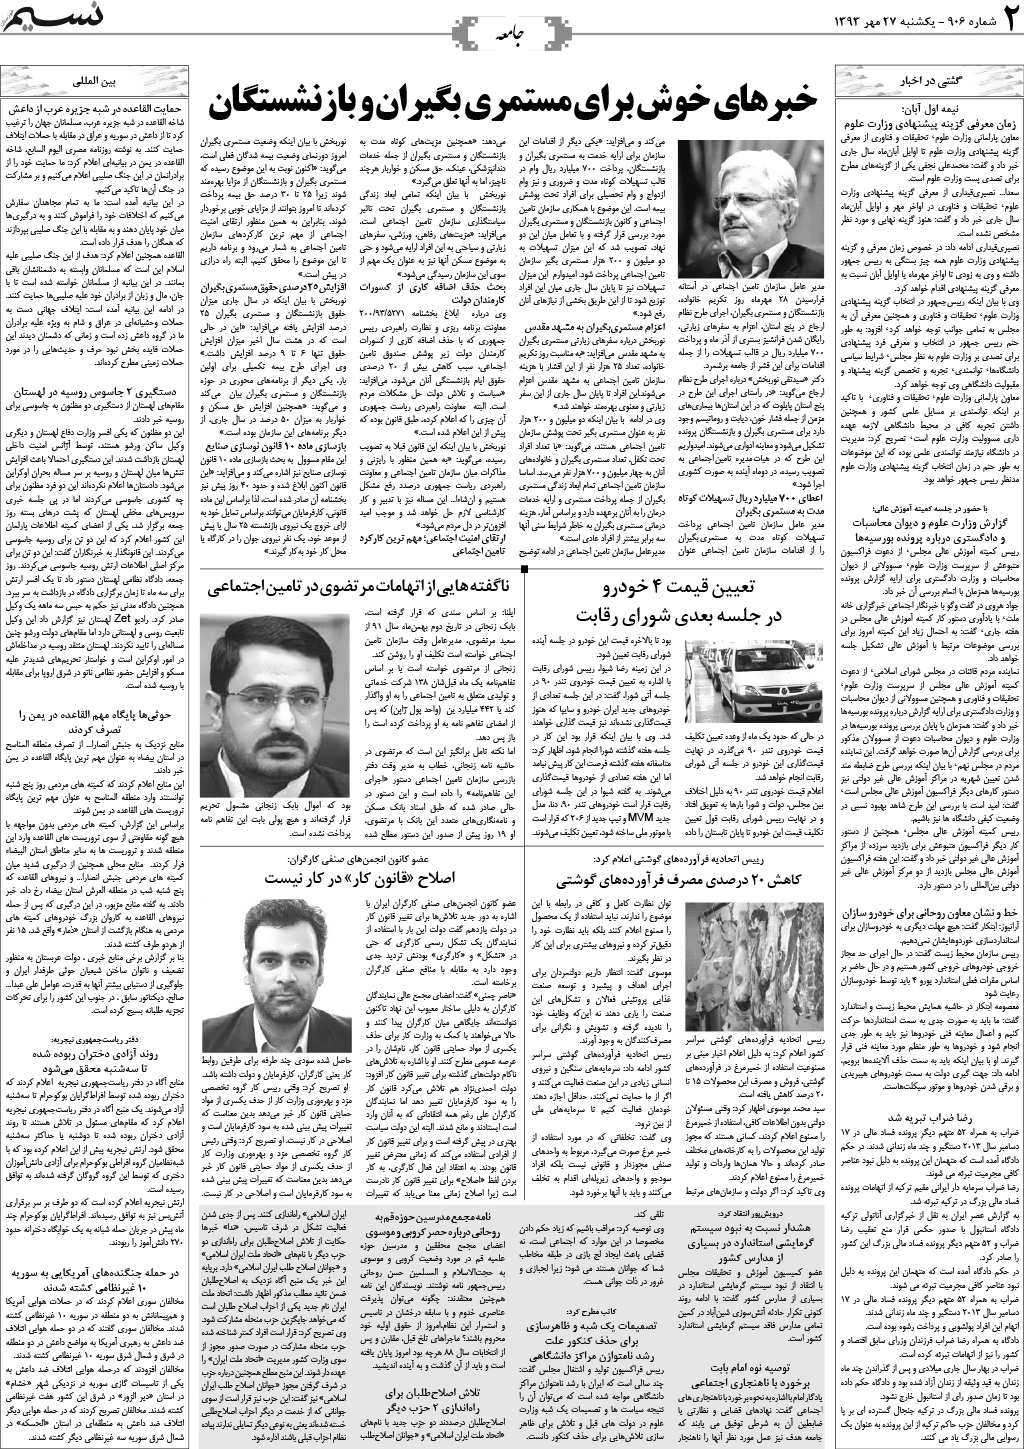 صفحه جامعه روزنامه نسیم خوزستان شماره ۹۰۶